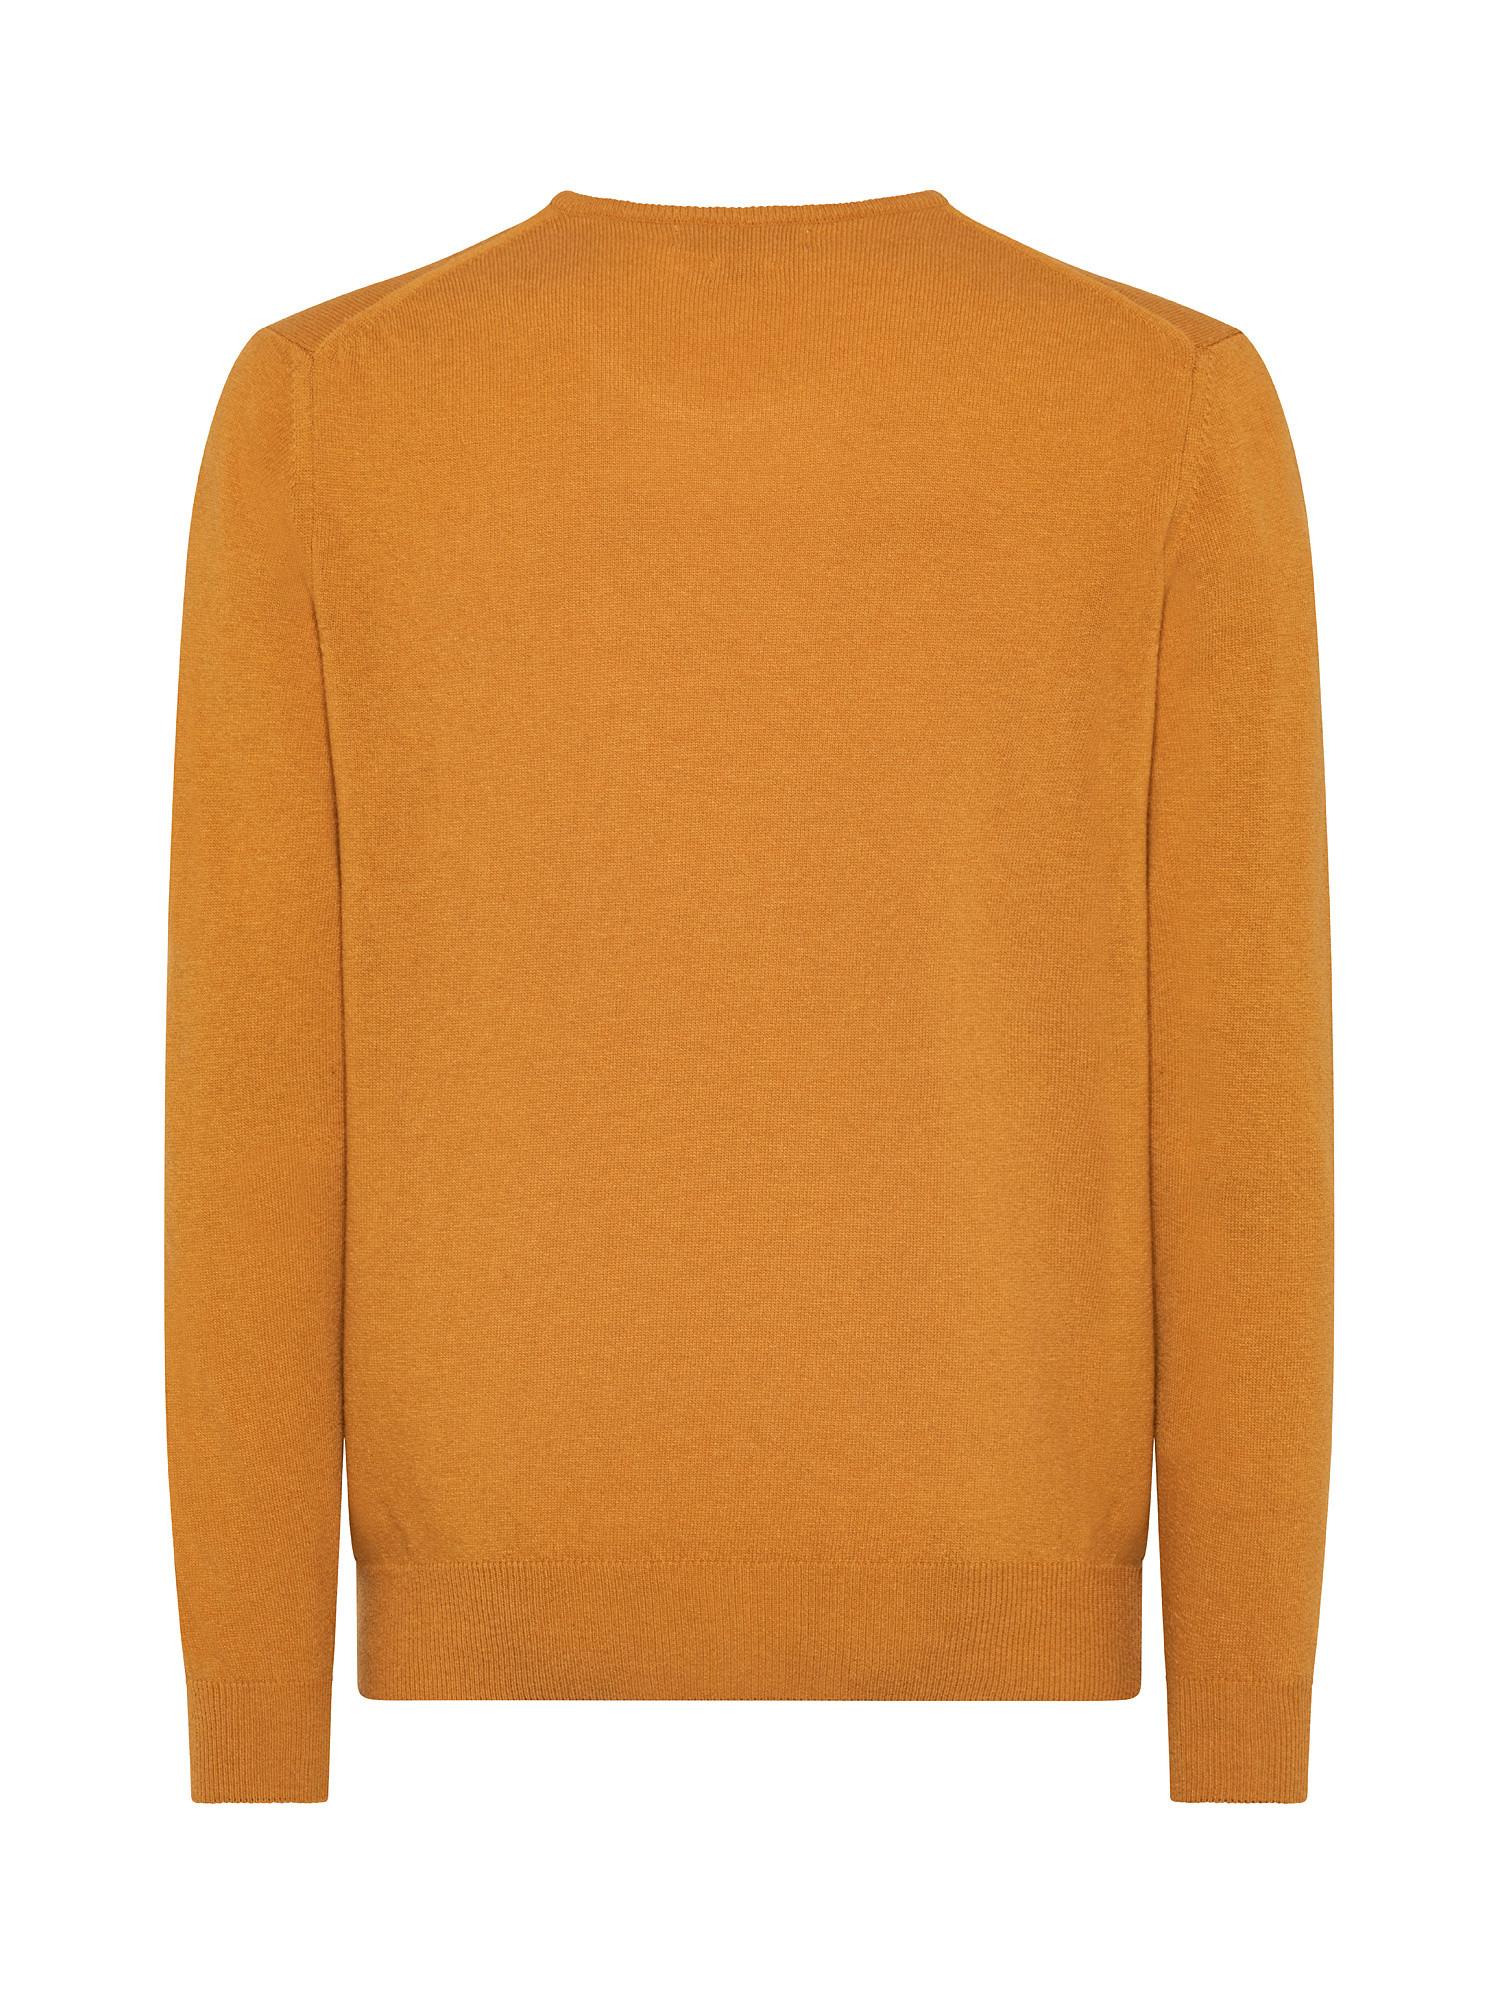 Basic cashmere blend pullover, Orange, large image number 1